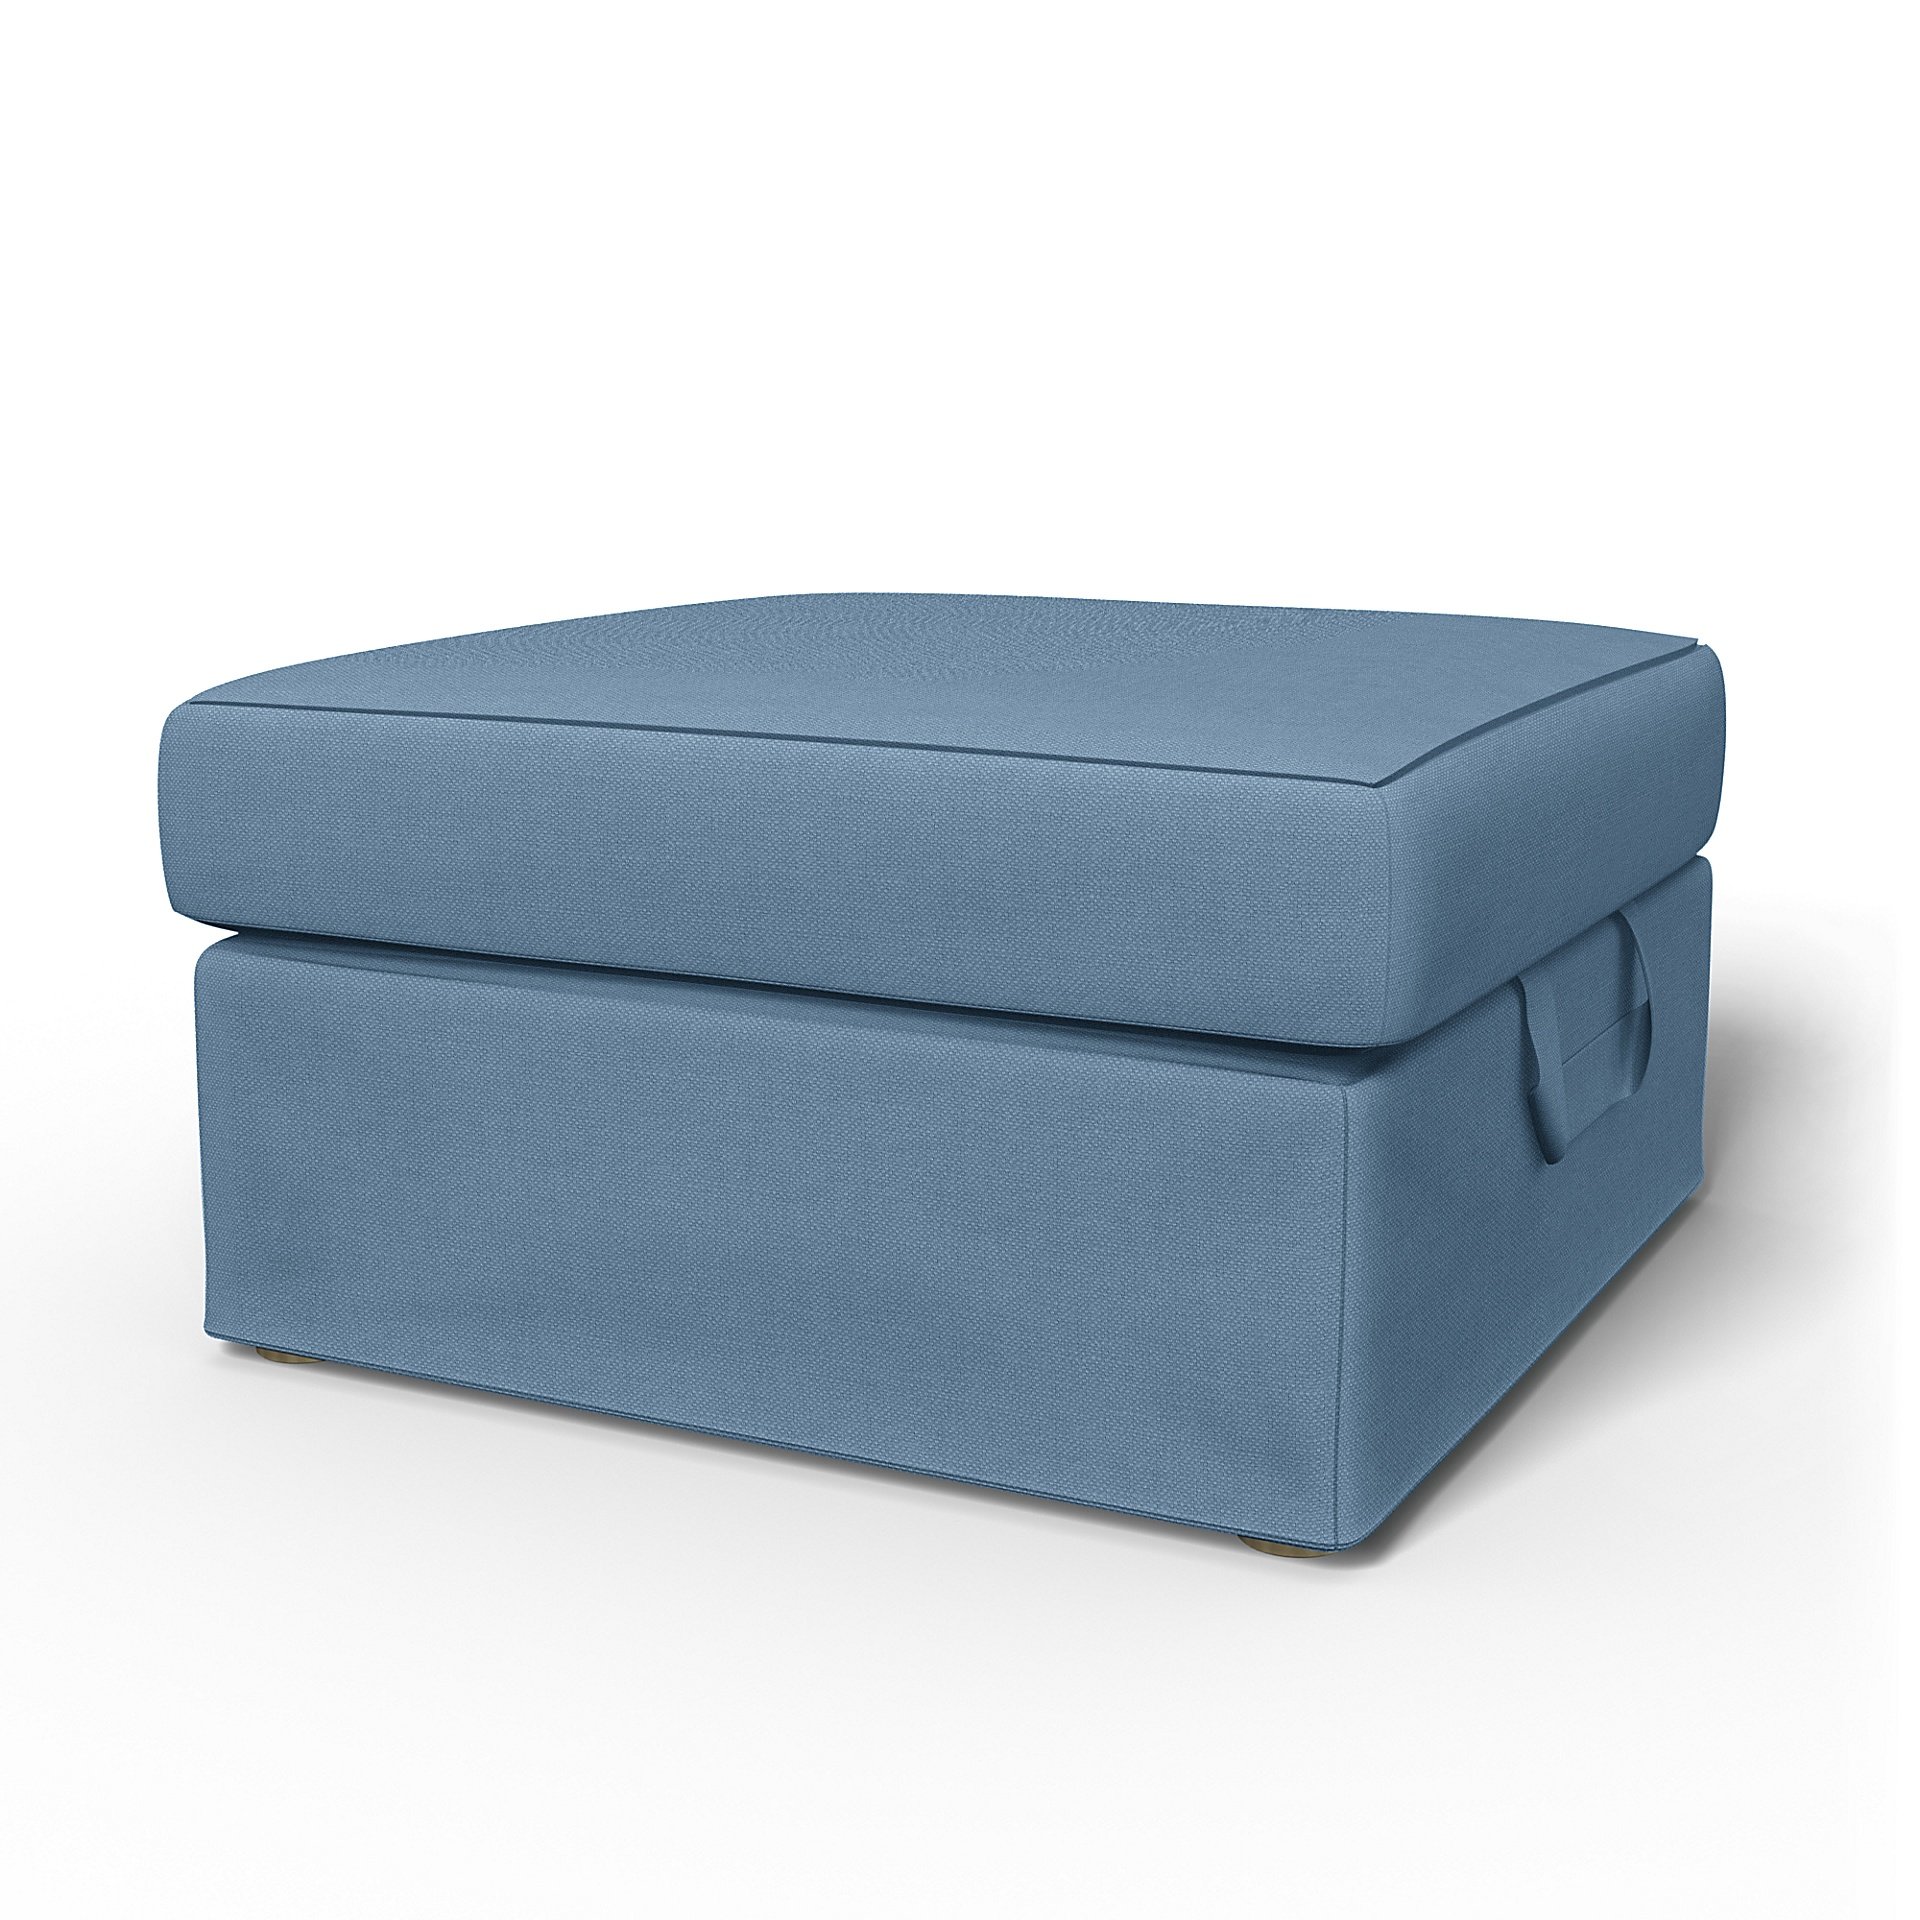 IKEA - Tomelilla Foto Footstool Cover, Vintage Blue, Linen - Bemz